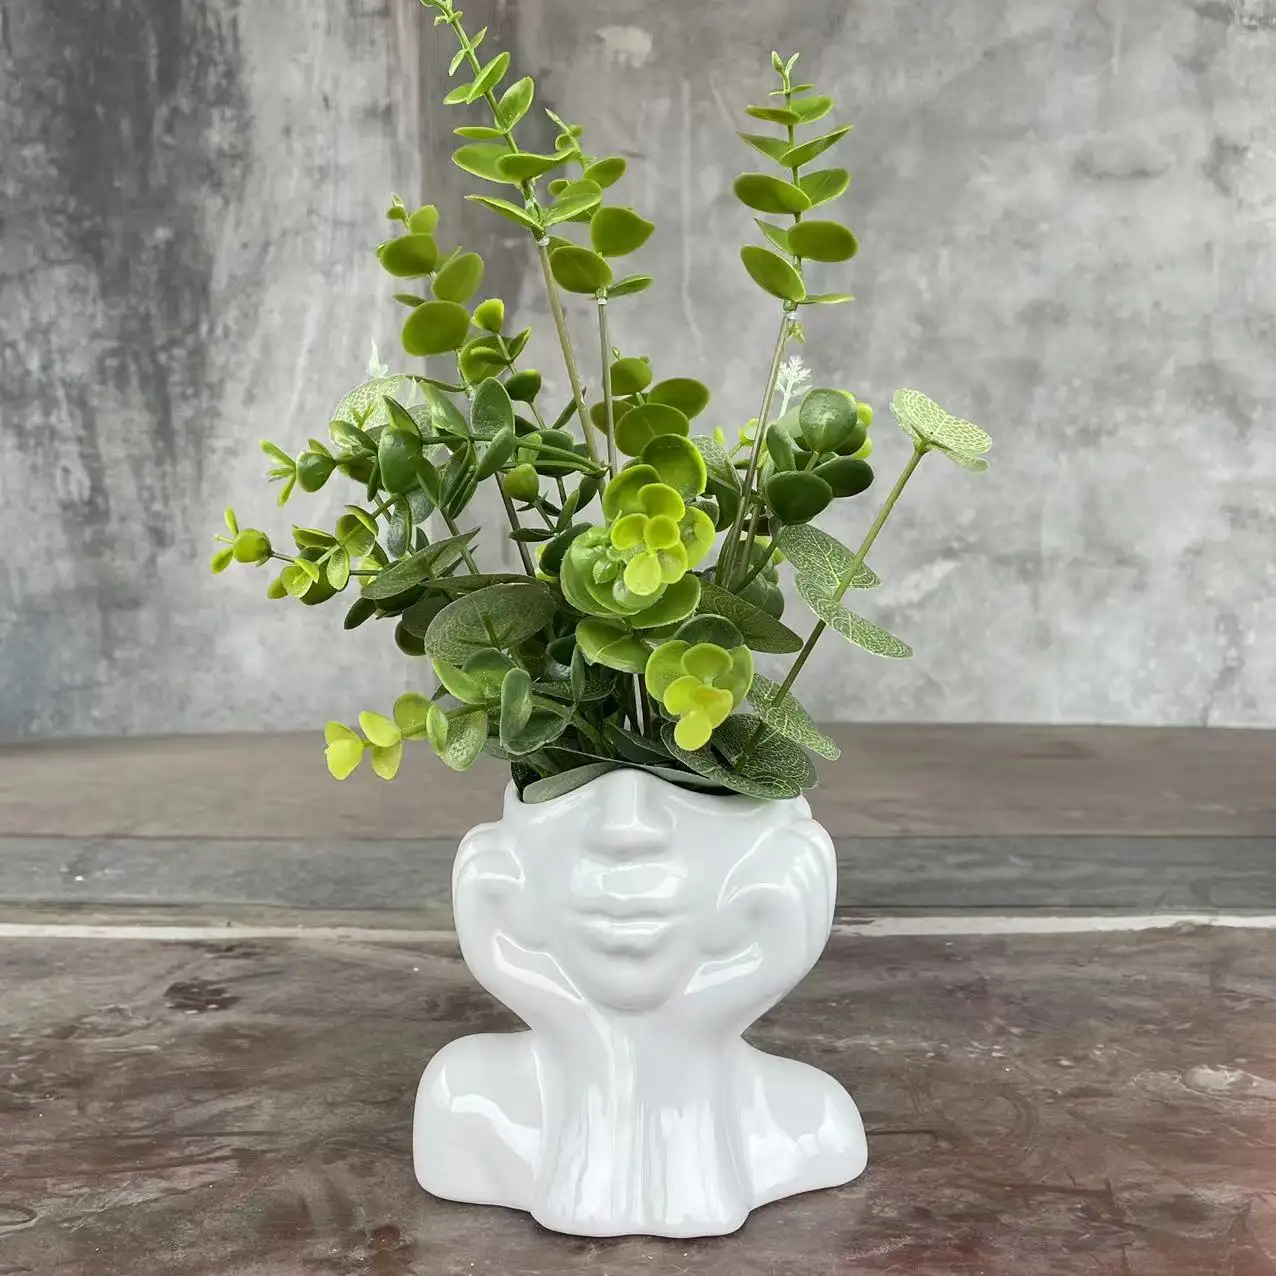 40cm dunkelgrüner Kunststoff Sansevieria künstliche Schlangen pflanzen Günstige dekorative Pflanzen Garten künstliche Pflanze Großhandel